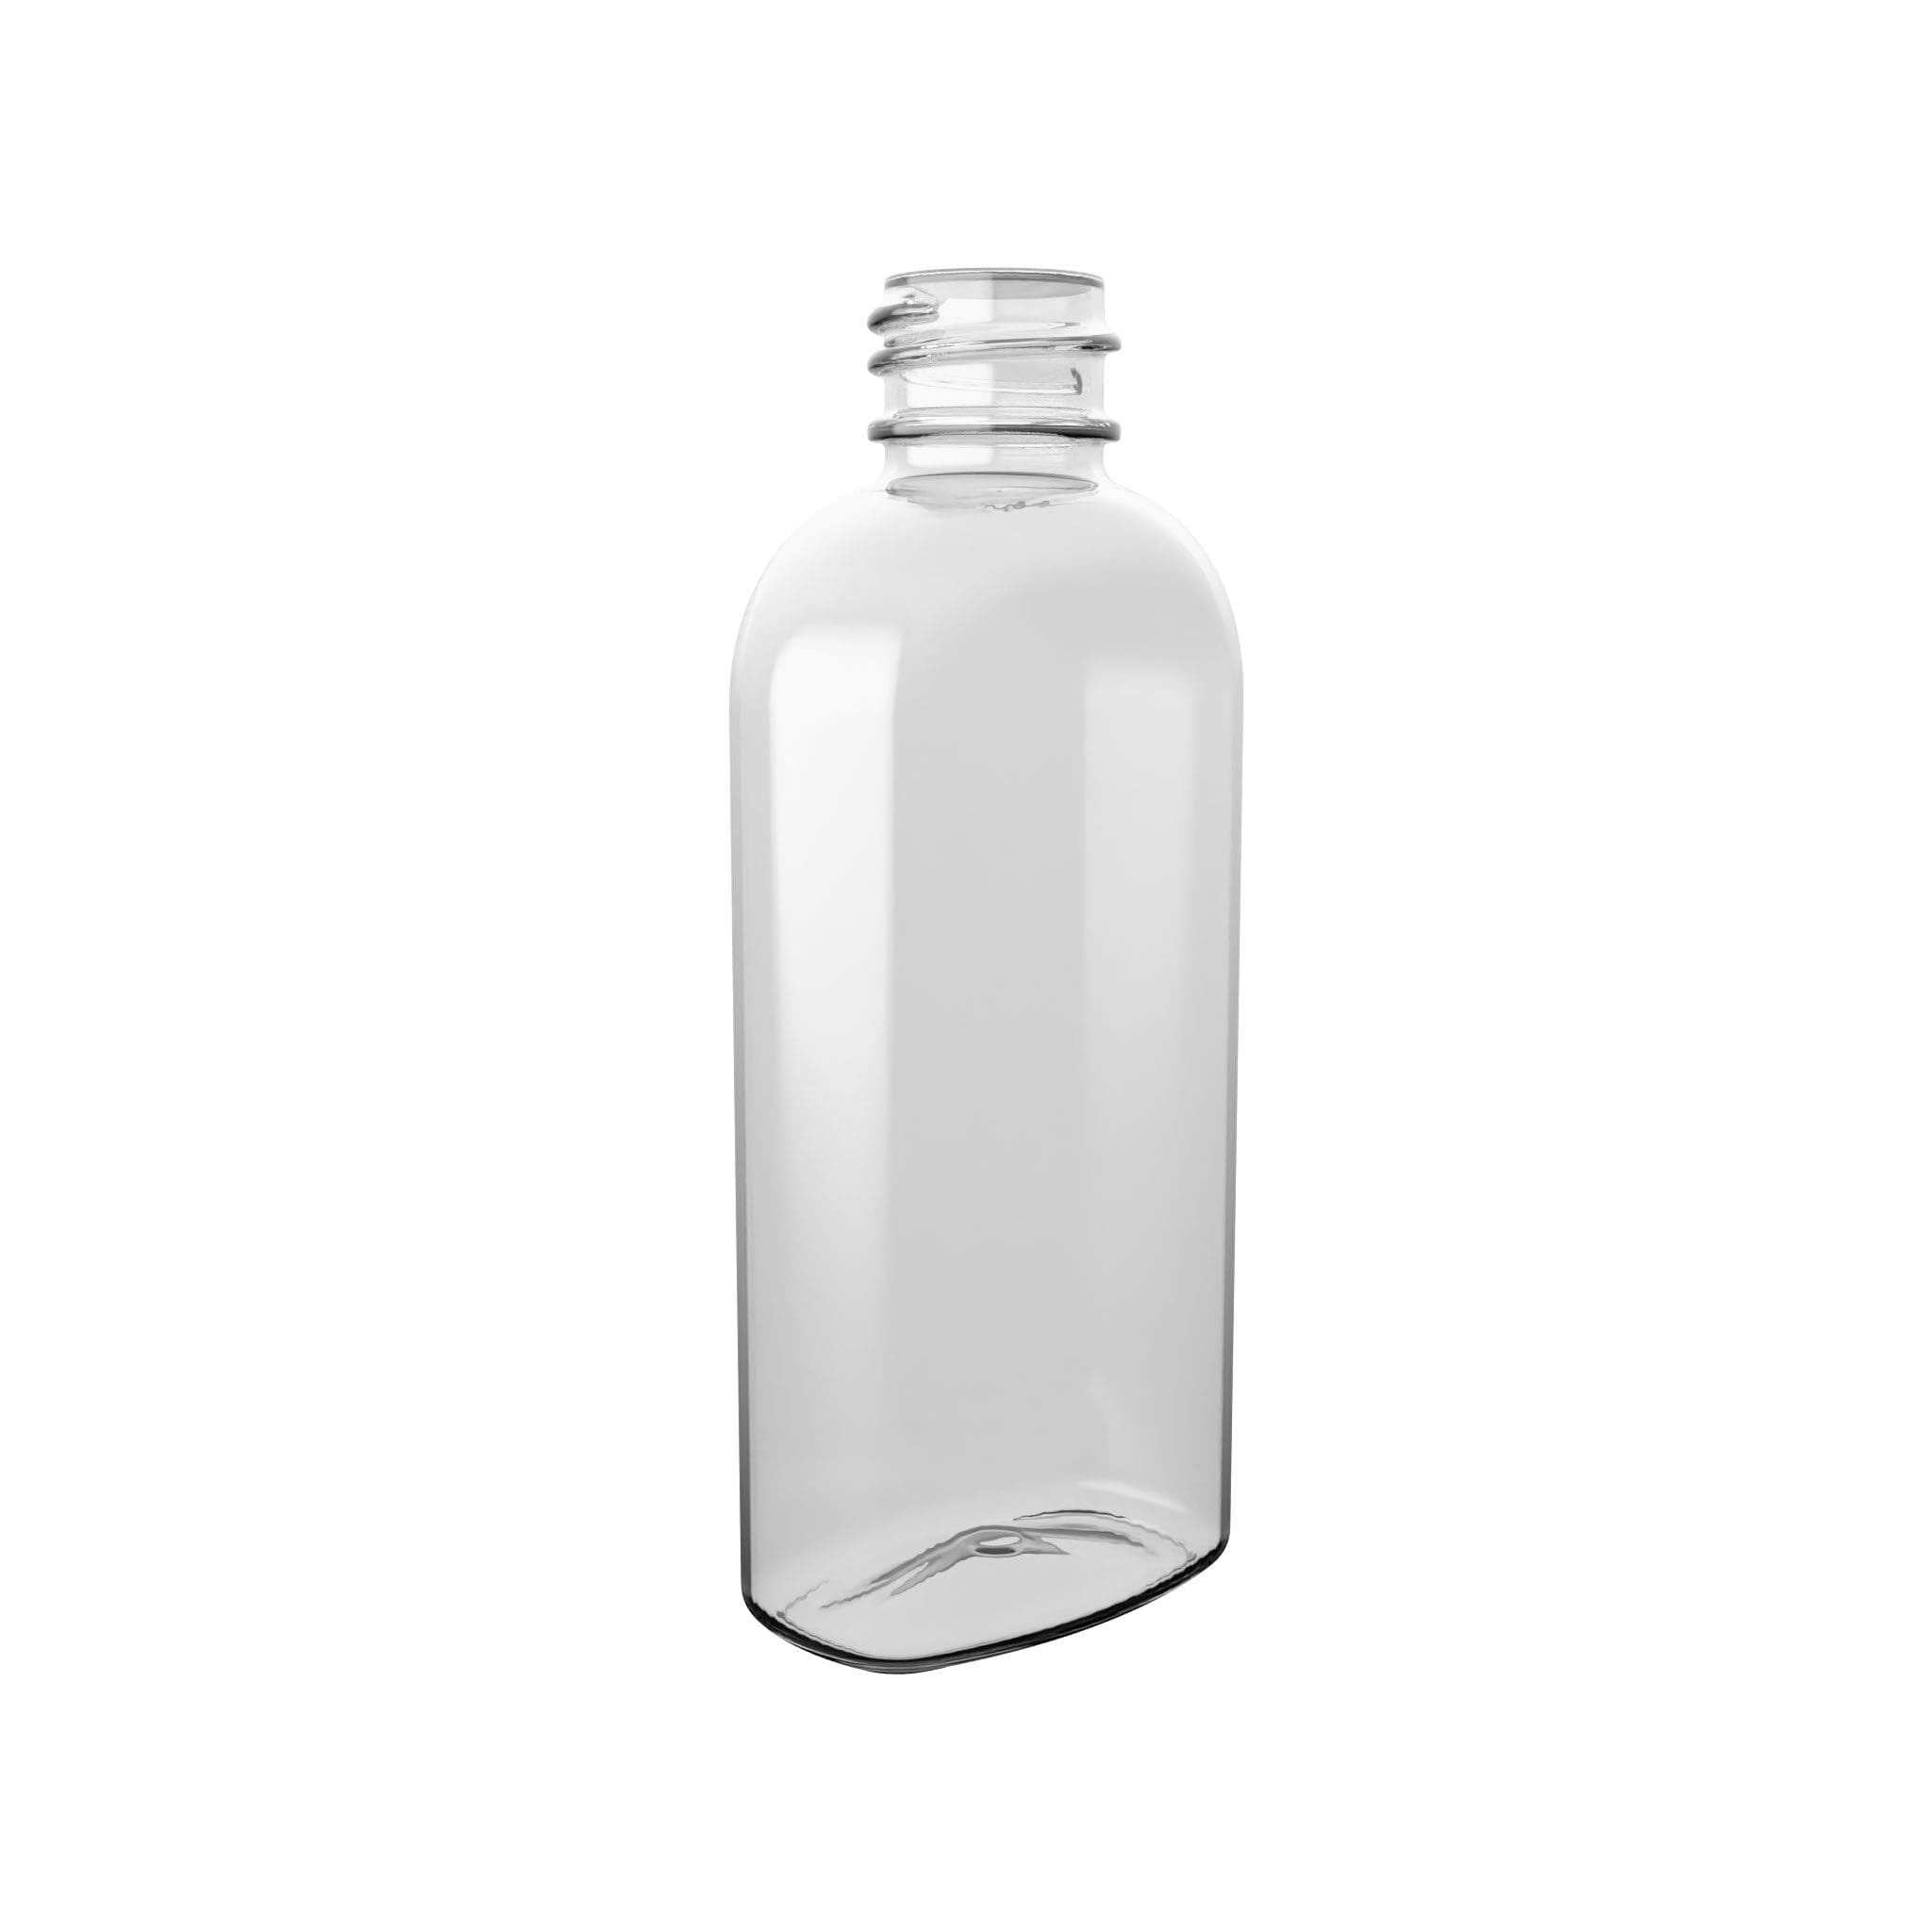 PET-Flasche BASIC OVAL in ovaler Flaschenform.